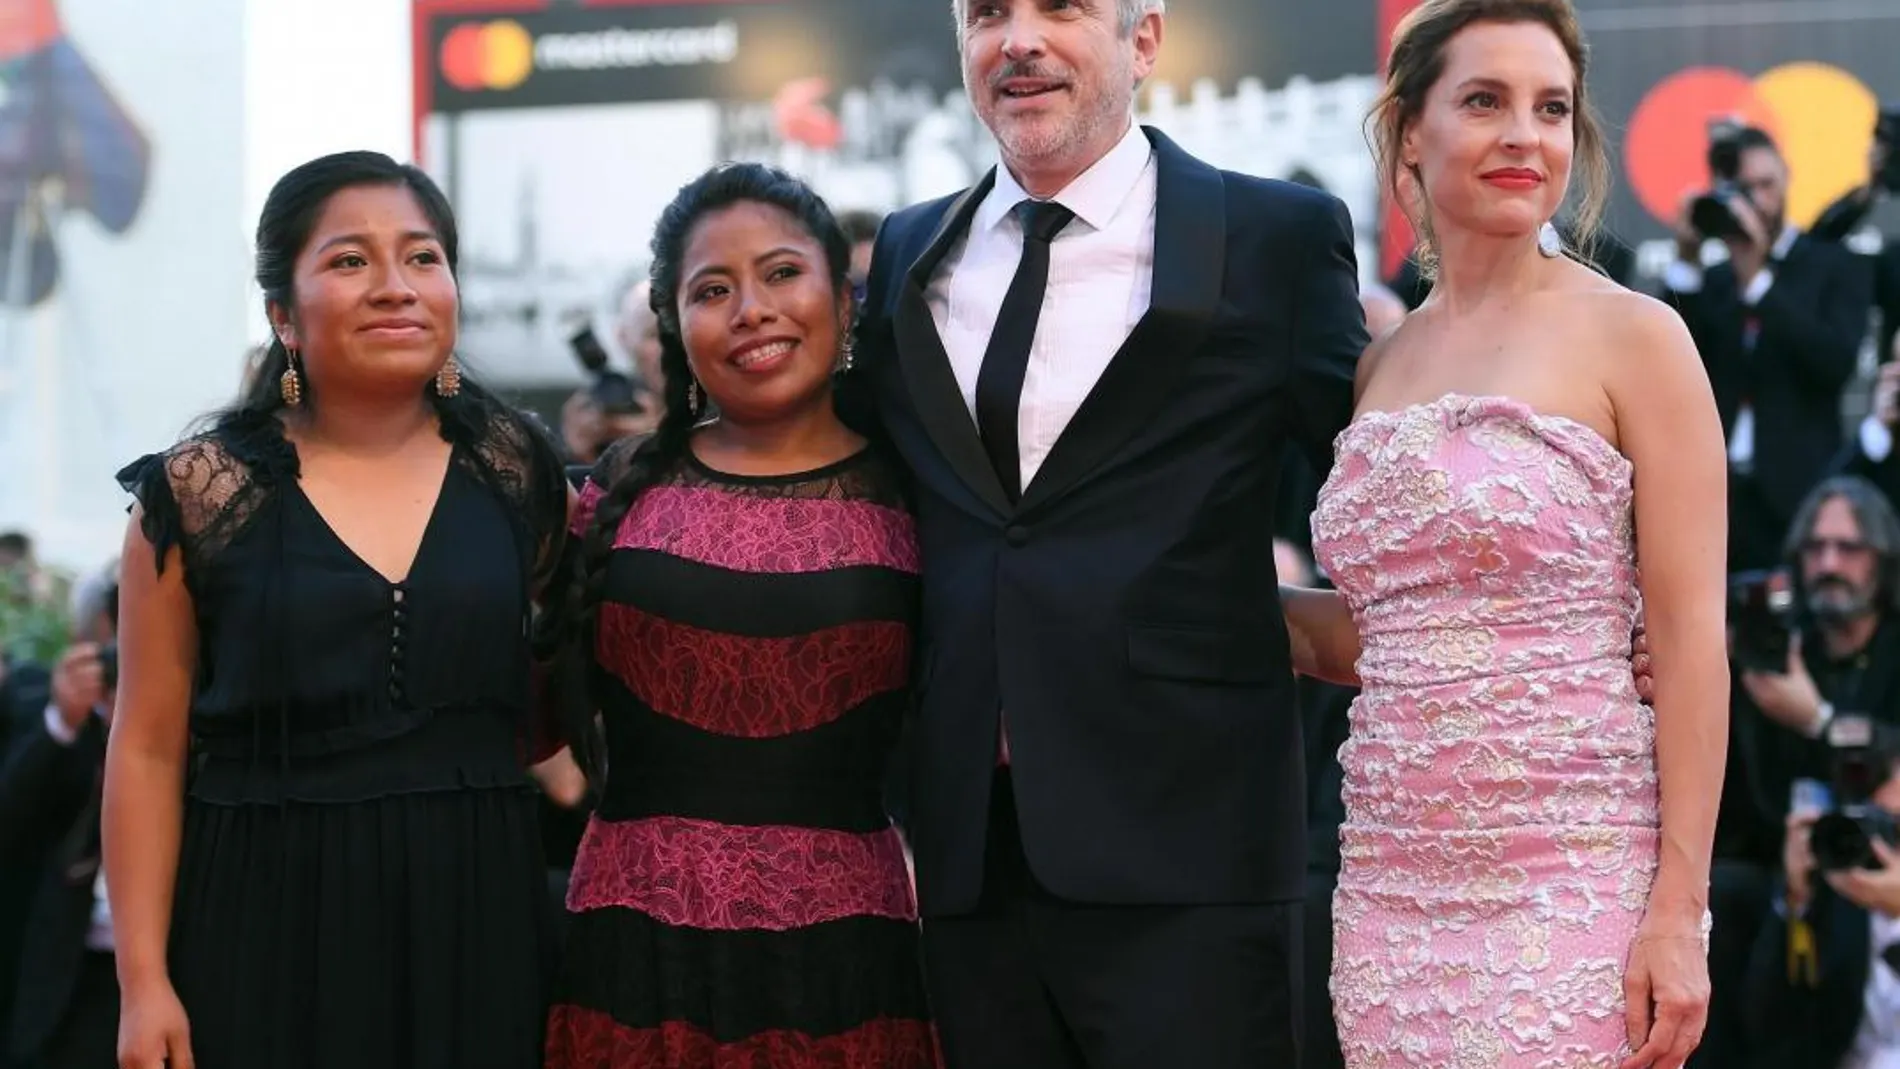 El director mexicano Alfonso Cuarón posa junto a las actrices mexicanas Nancy García, Yalitza Aparicio, y Marina de Tavira durante el estreno de la cinta "Roma"/ Efe